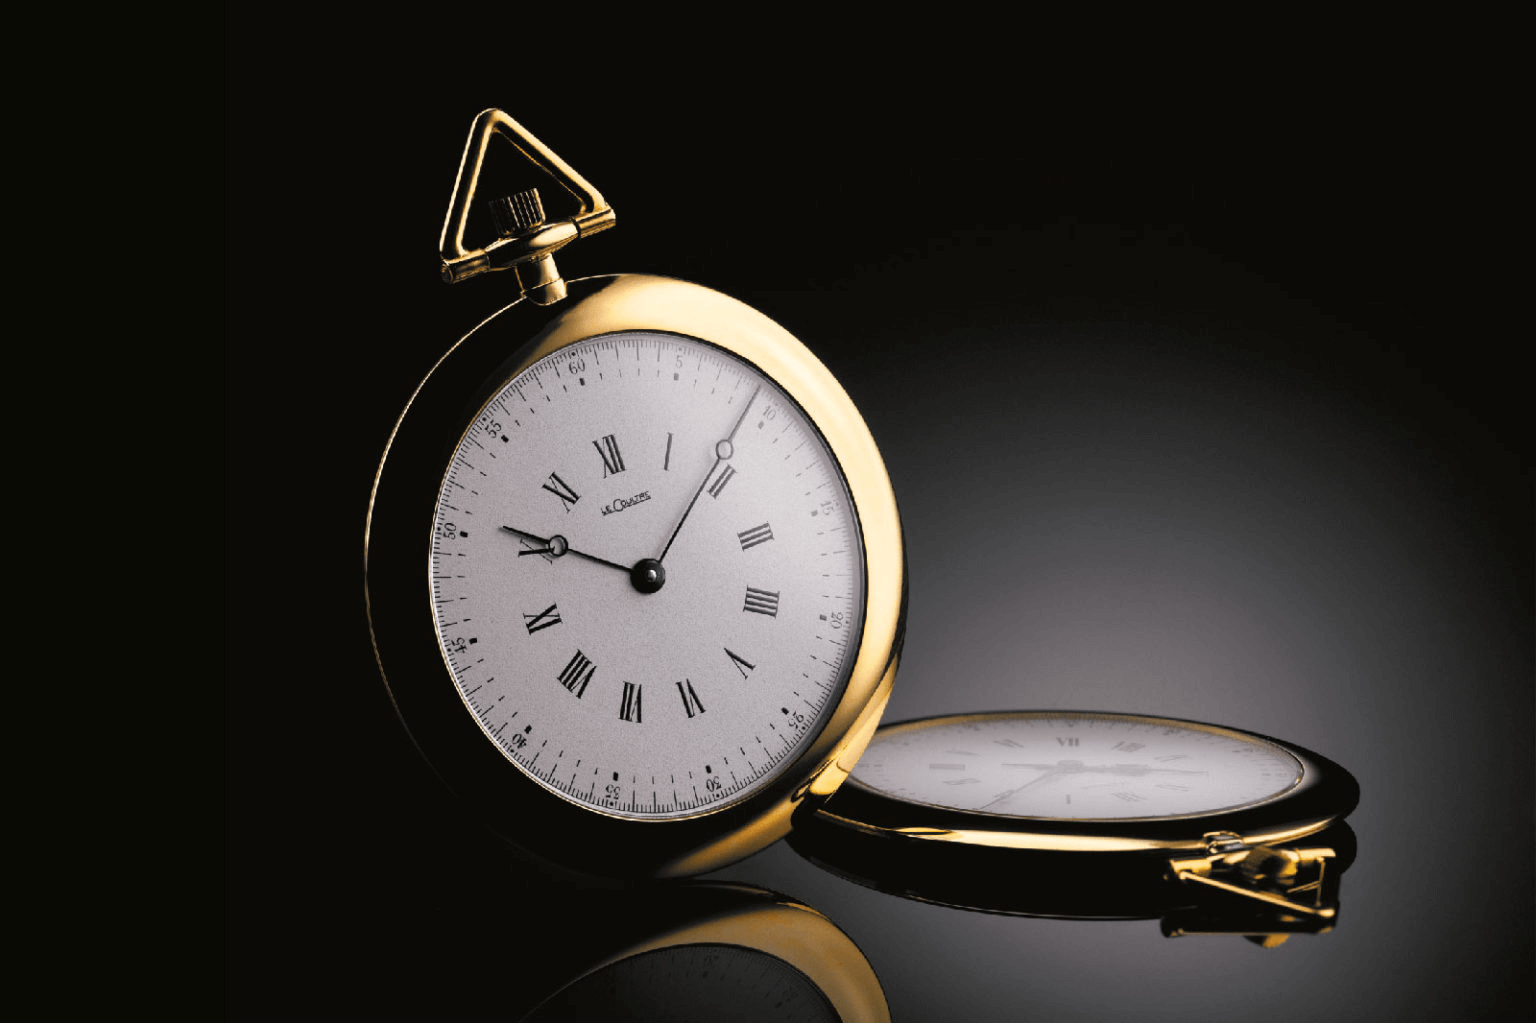 Đồng hồ bỏ túi LeCoultre “couteau” sử dụng máy calibre 145  sản xuất những năm 1900